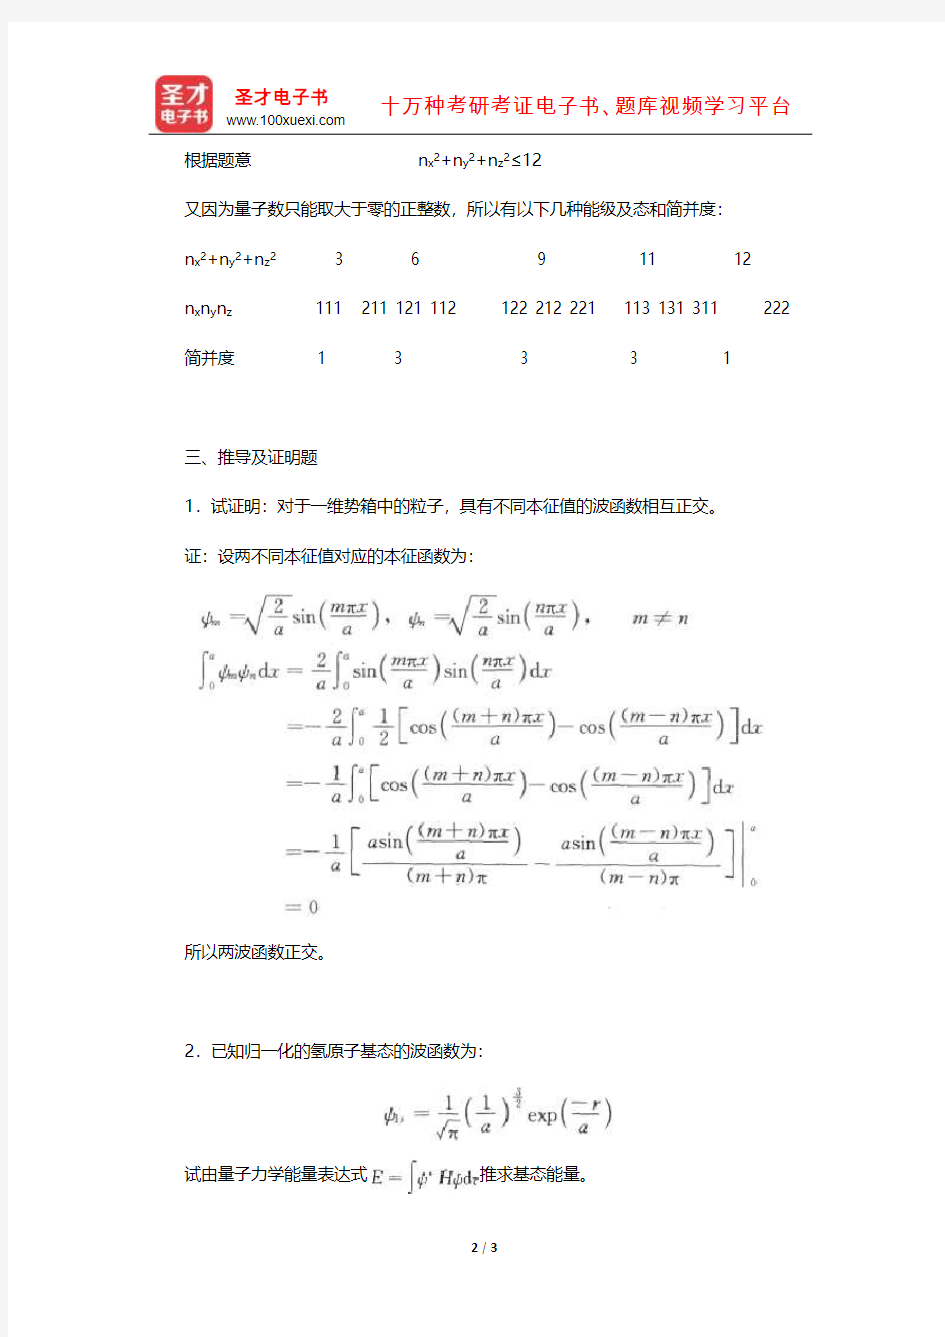 天津大学物理化学教研室《物理化学》(下册)章节题库(量子力学基础)